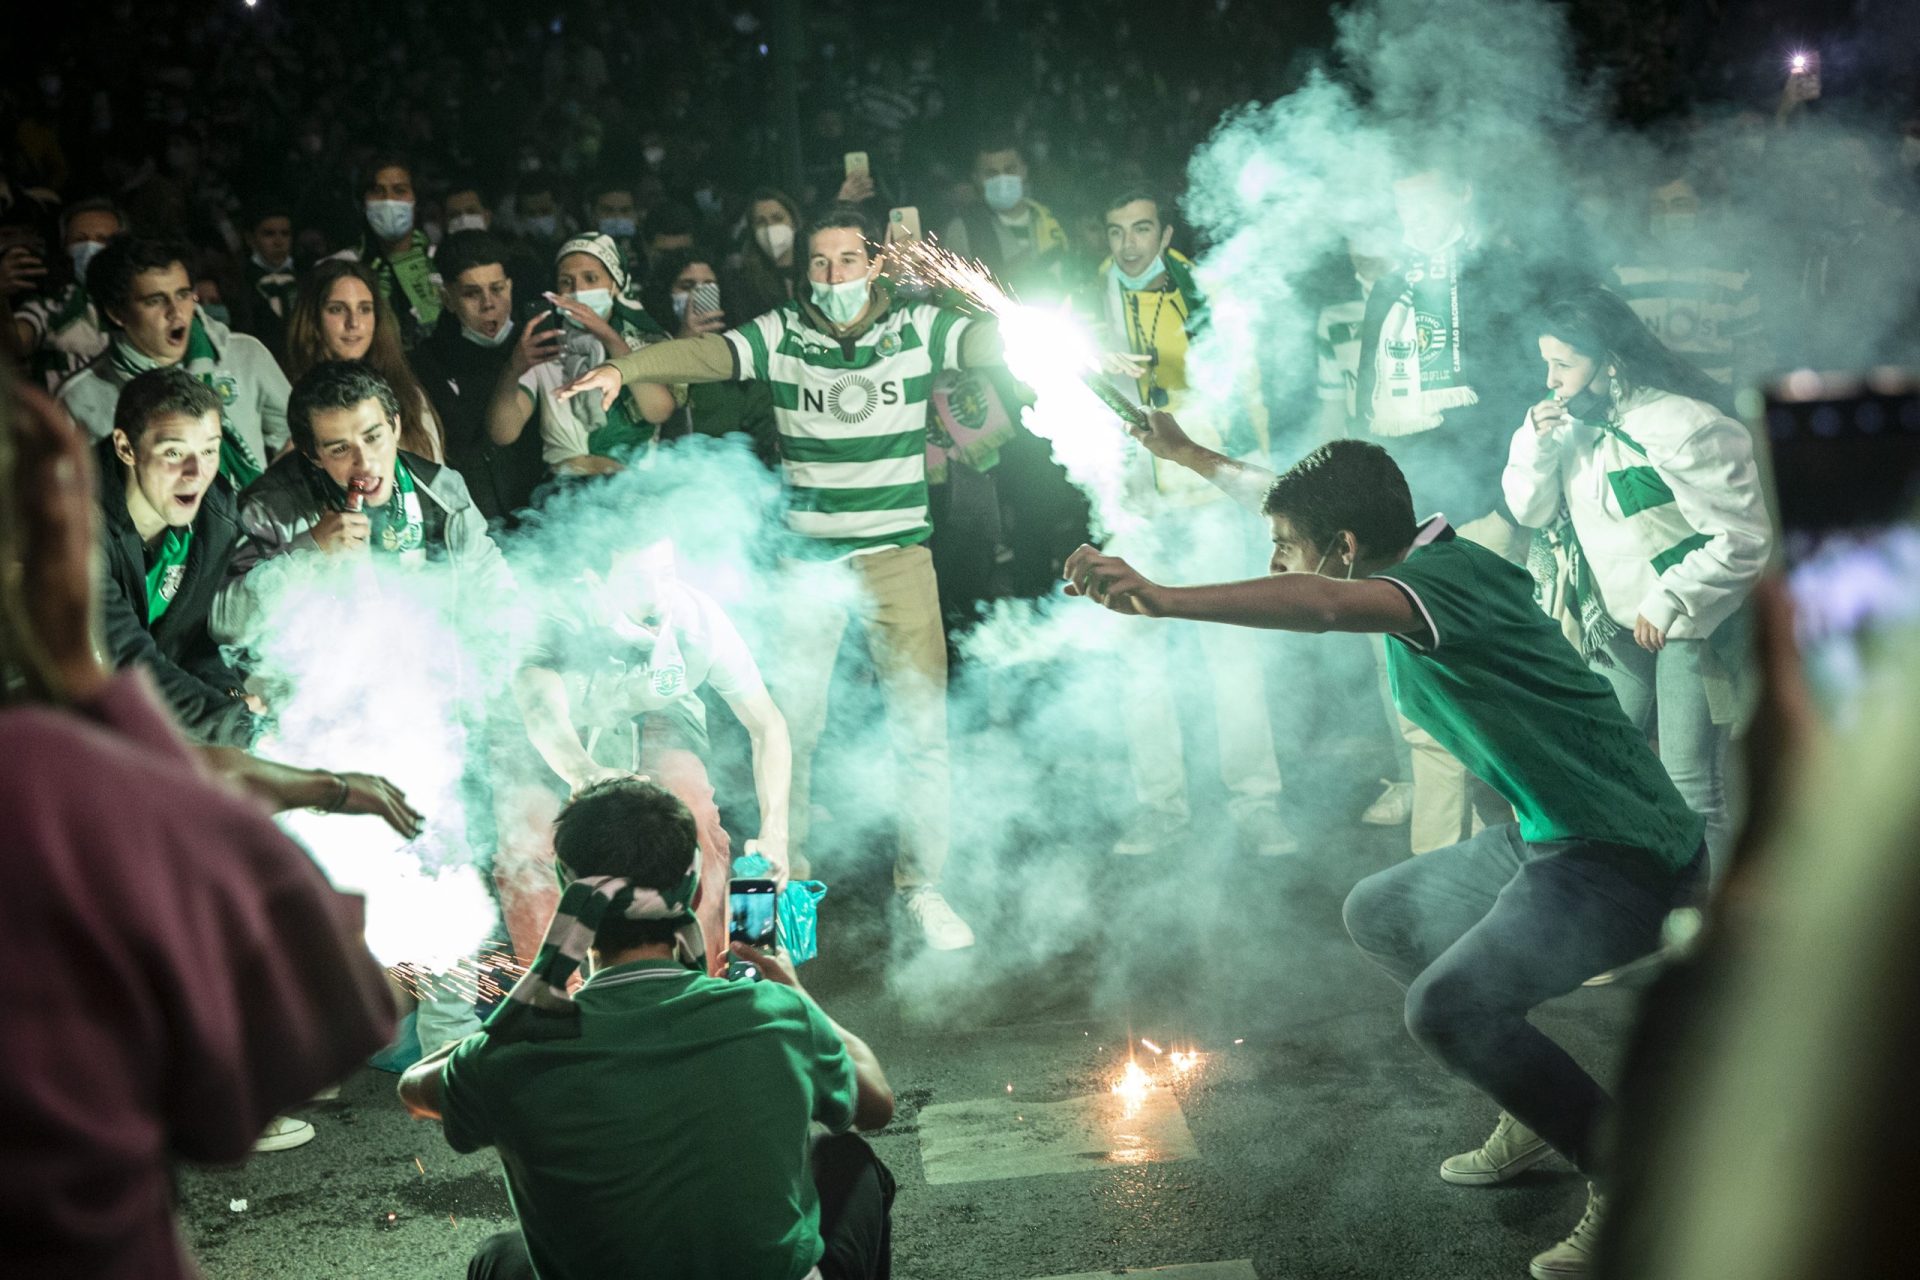 Noite de festejos do Sporting resultou em três detidos, 30 identificados e 63 engenhos pirotécnicos apreendidos pela PSP